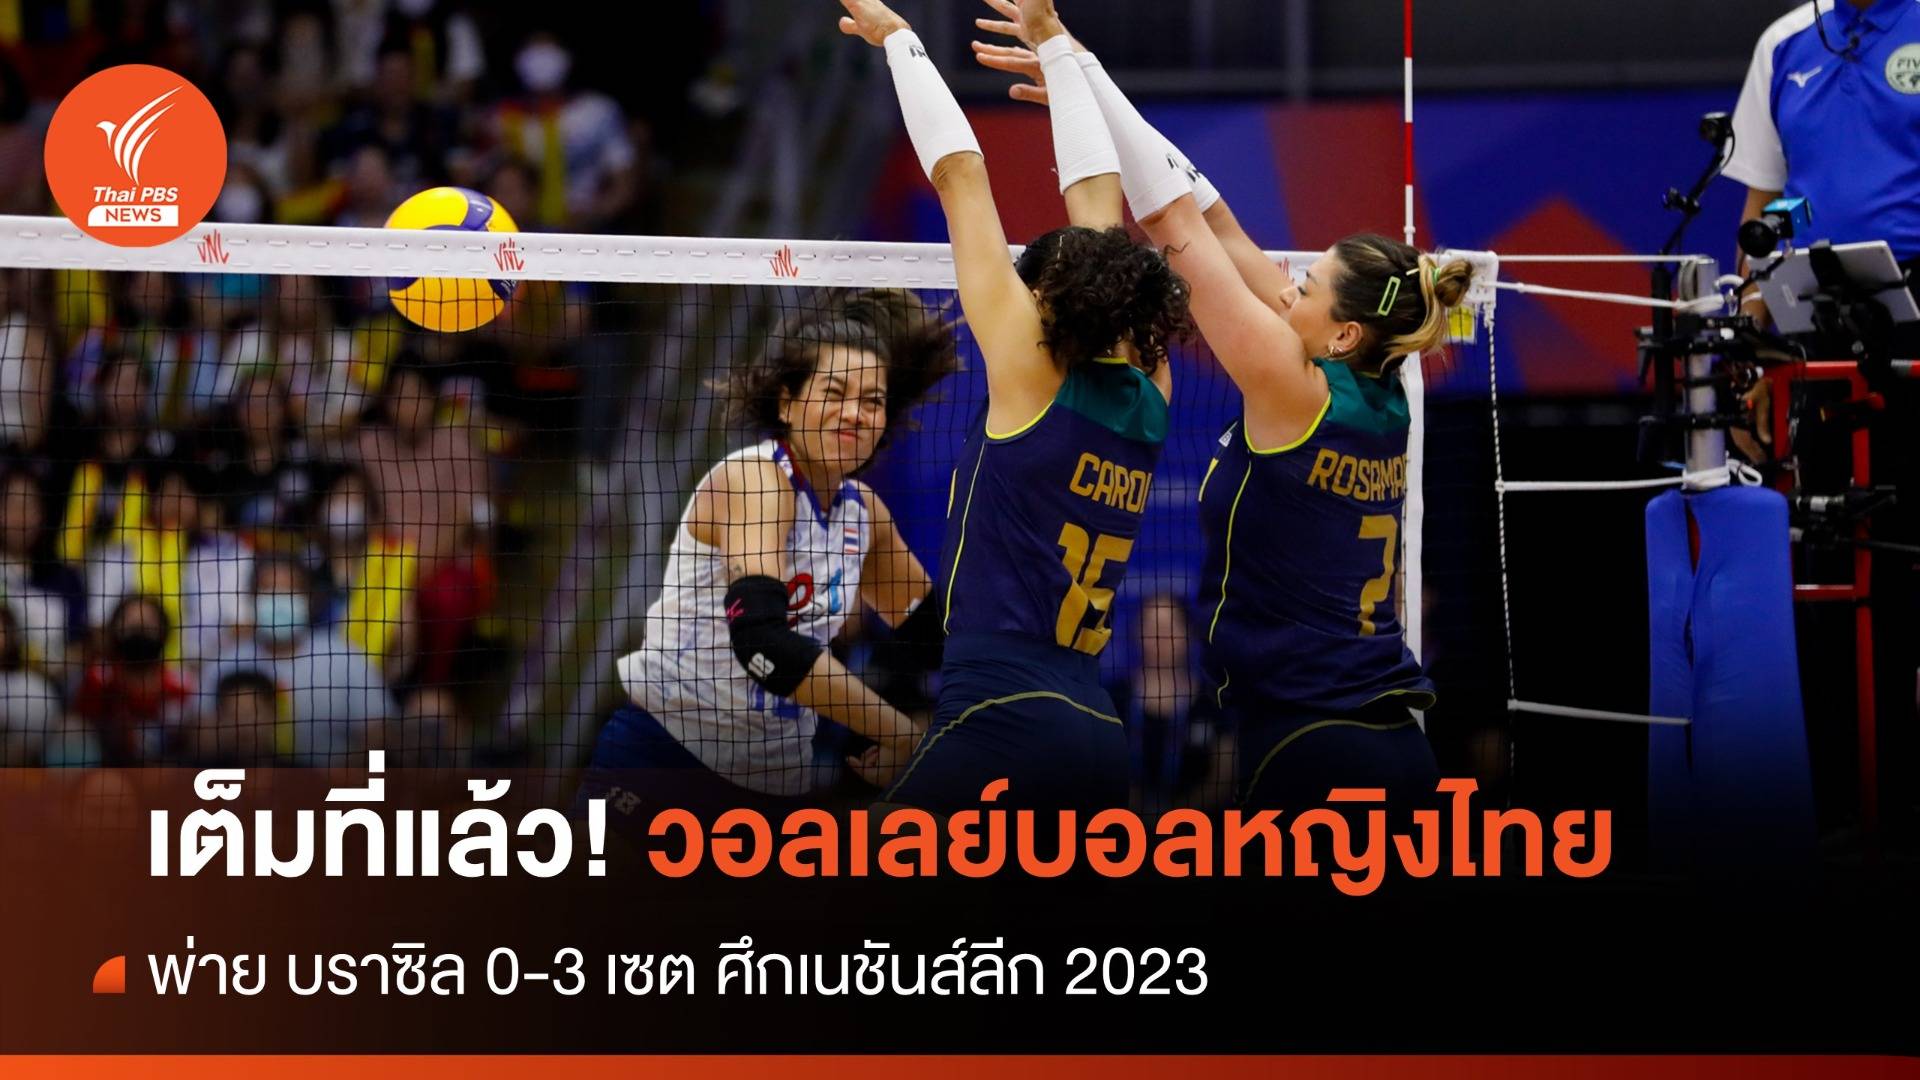 เต็มที่แล้ว! วอลเลย์บอลหญิงไทย พ่าย บราซิล 0-3 เซต ศึกเนชันส์ลีก 2023